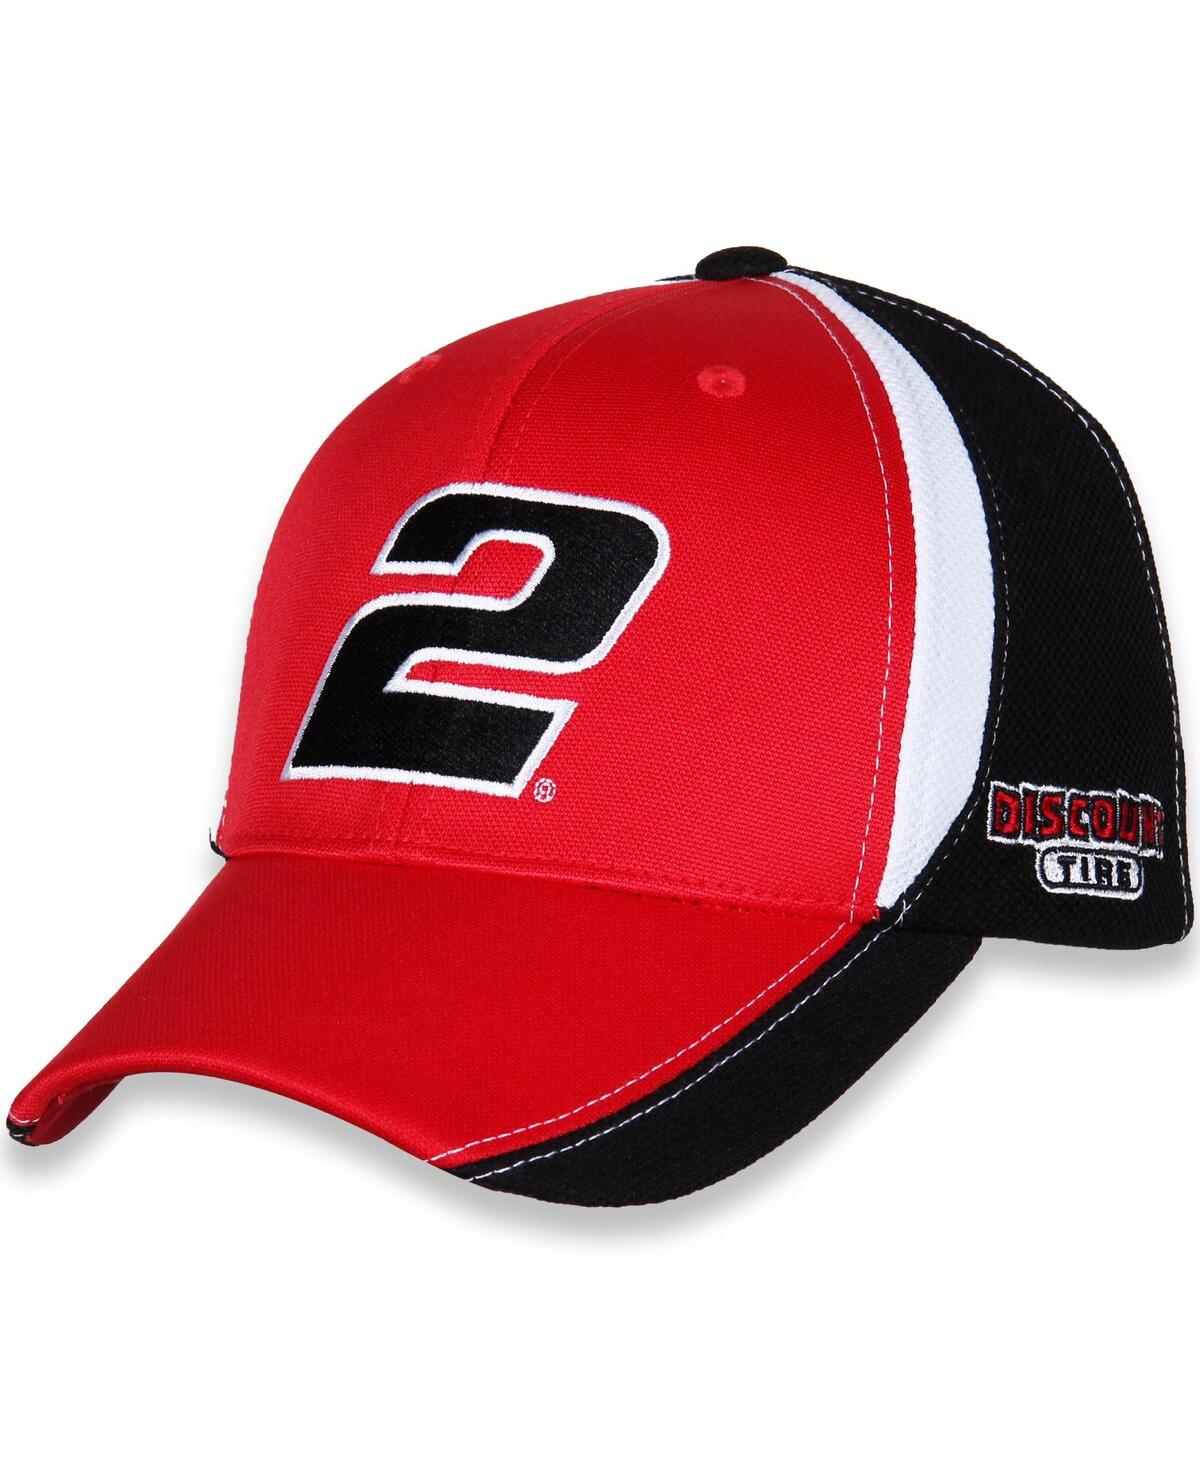 Team Penske Men's  Red, Black Austin Cindric Discount Tire Number Performance Adjustable Hat In Black,red